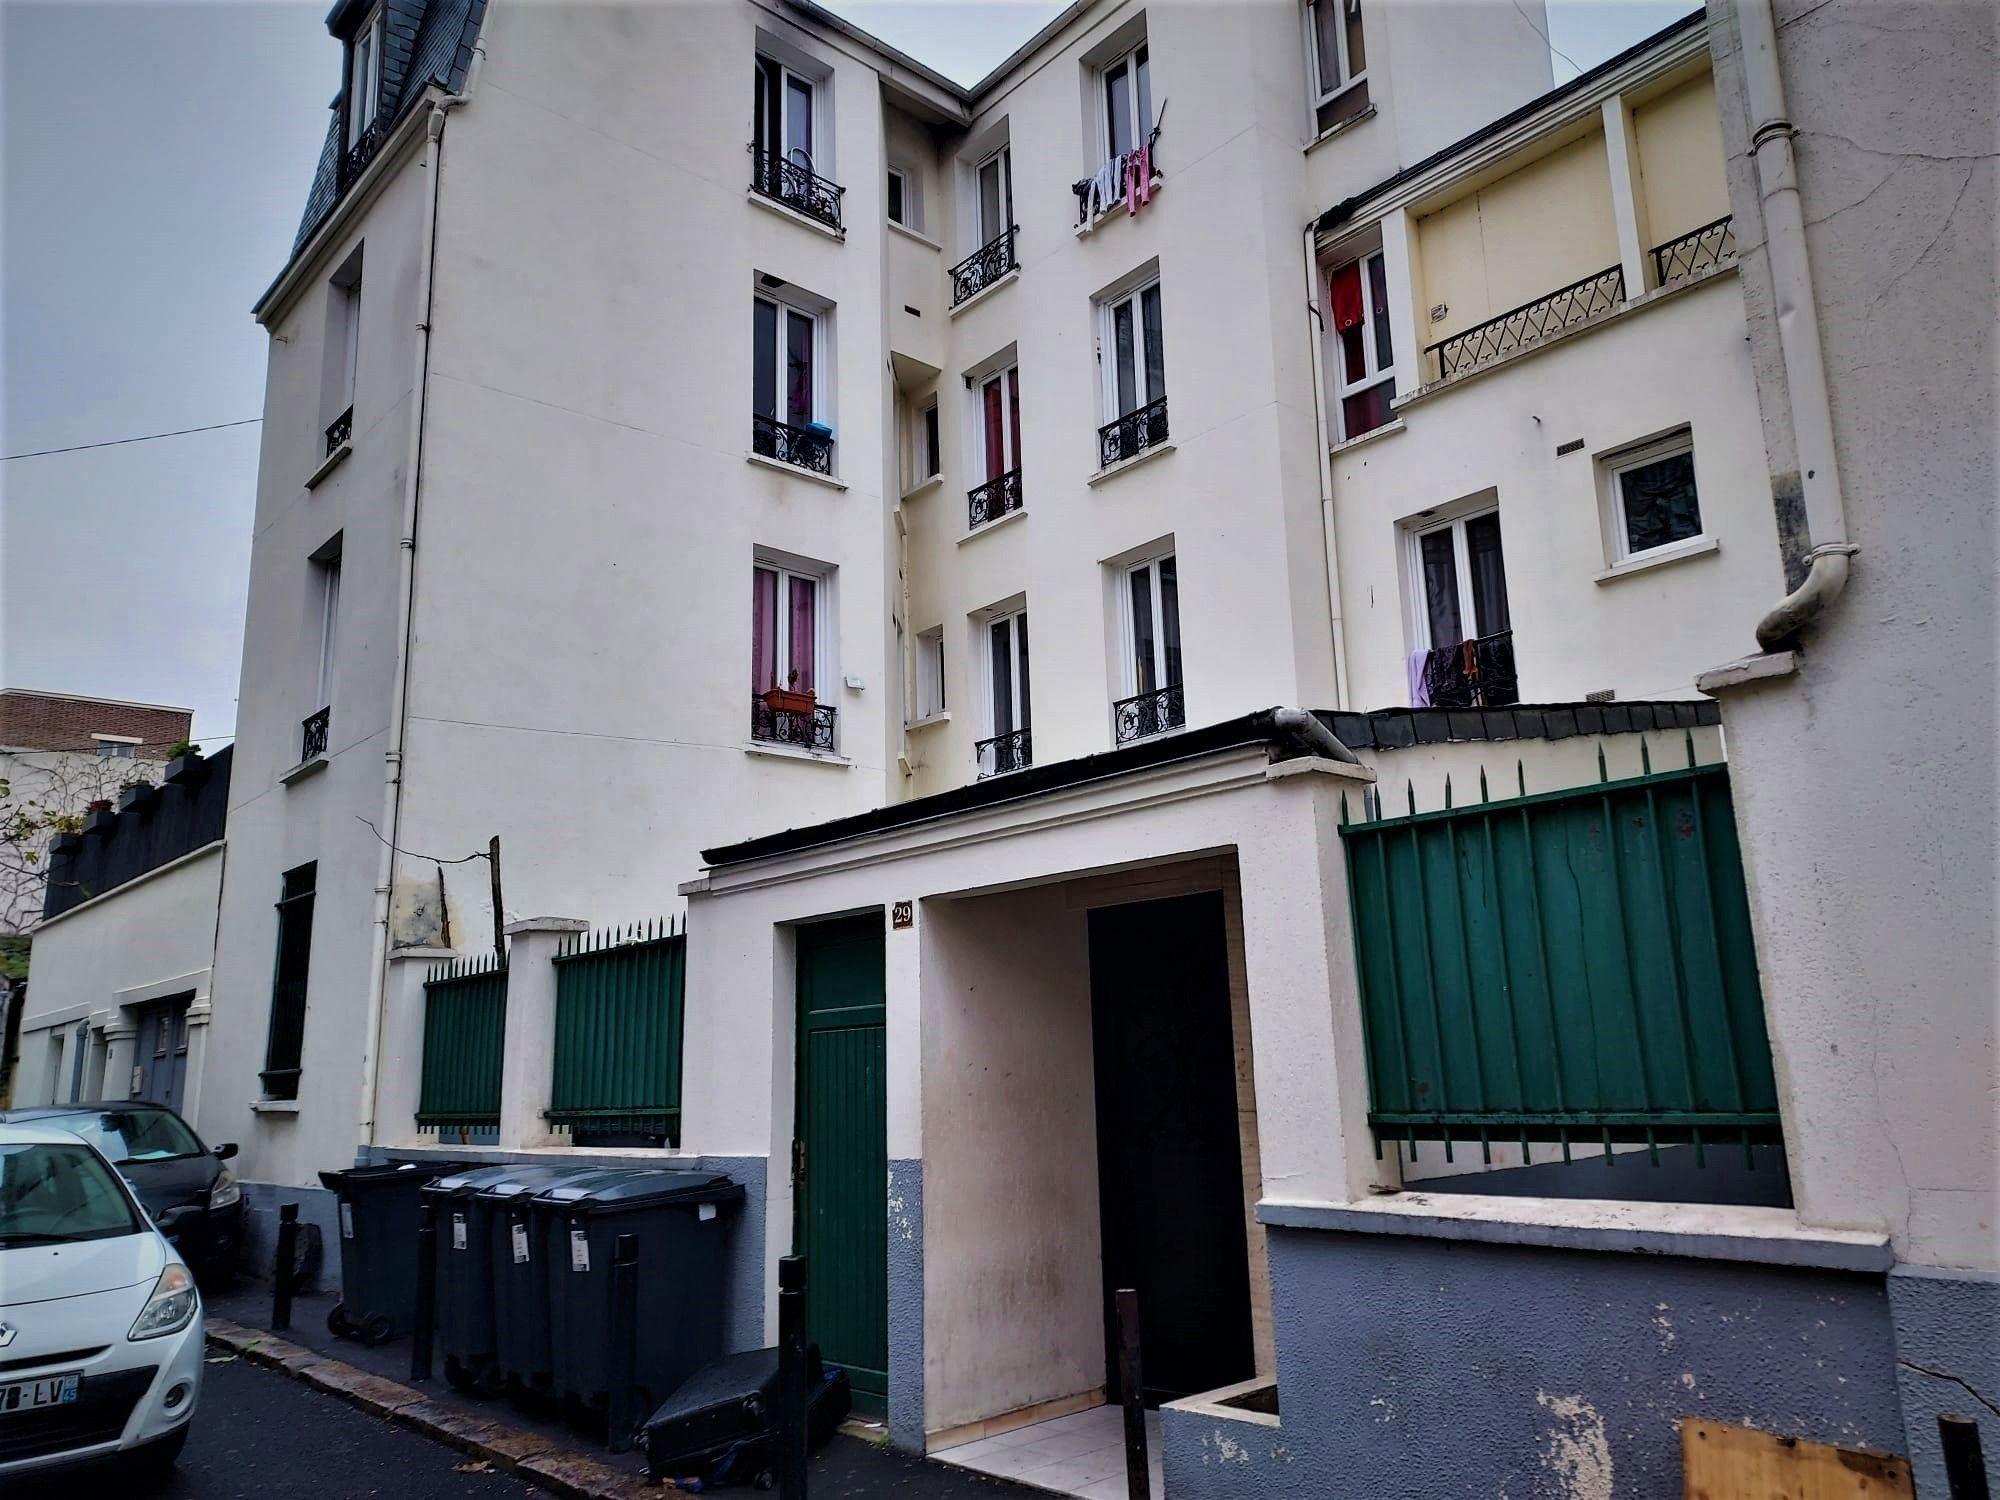 Saint-Ouen (Seine-Saint-Denis), novembre 2022. L’enquête a révélé que douze appartements de la « villa Biron », du nom de la rue où se situe cet immeuble, avaient été aménagés en chambres de passe. LP/Anthony Lieures